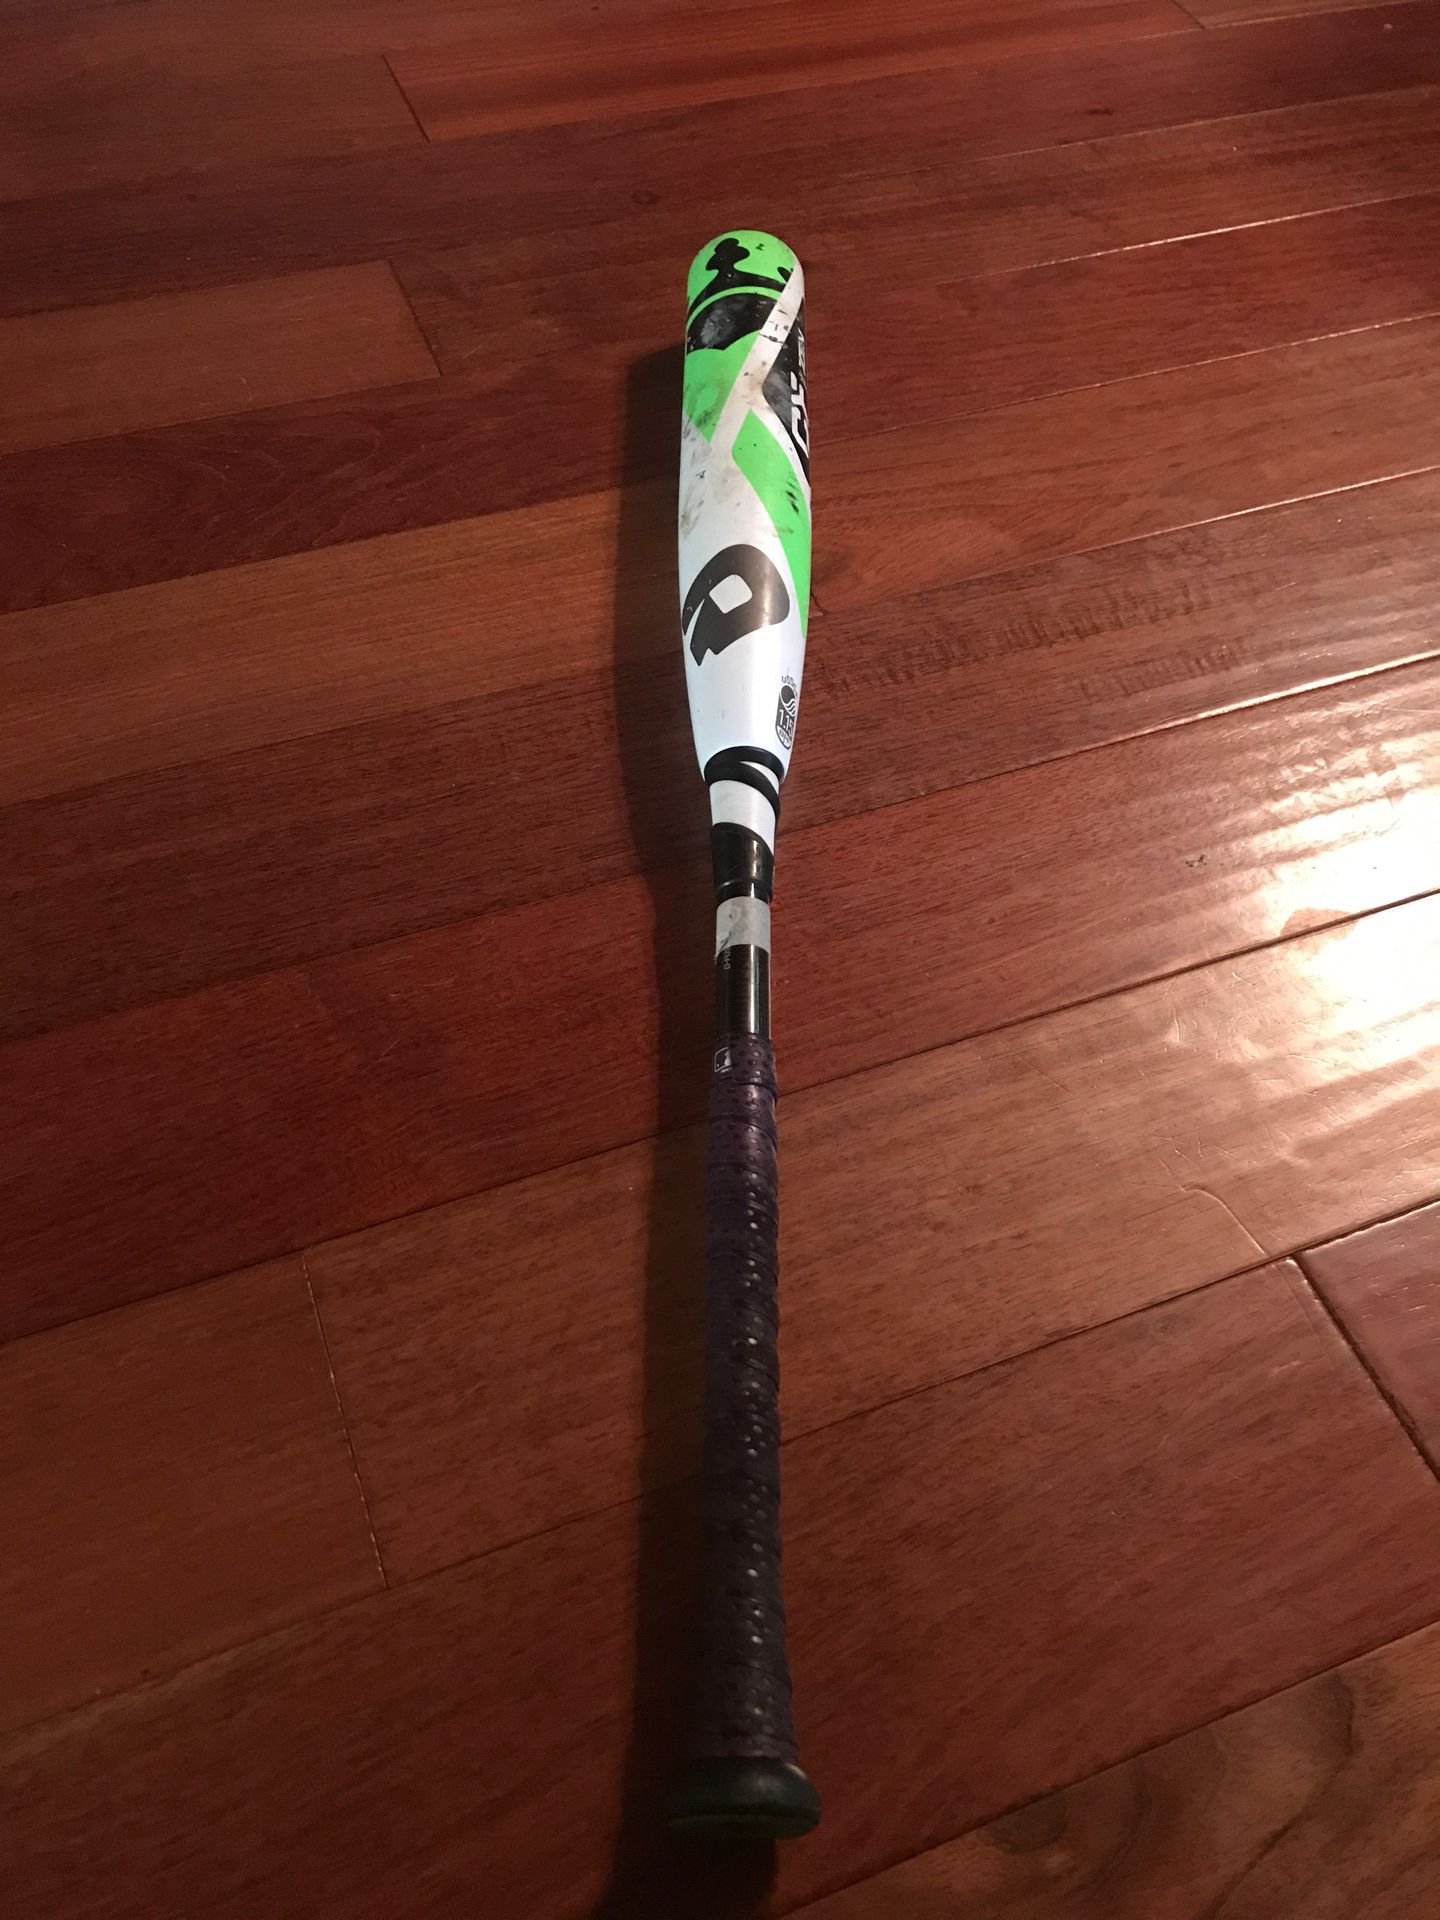 Amazing DeMarini -5 bat! Baseball steal of the week.